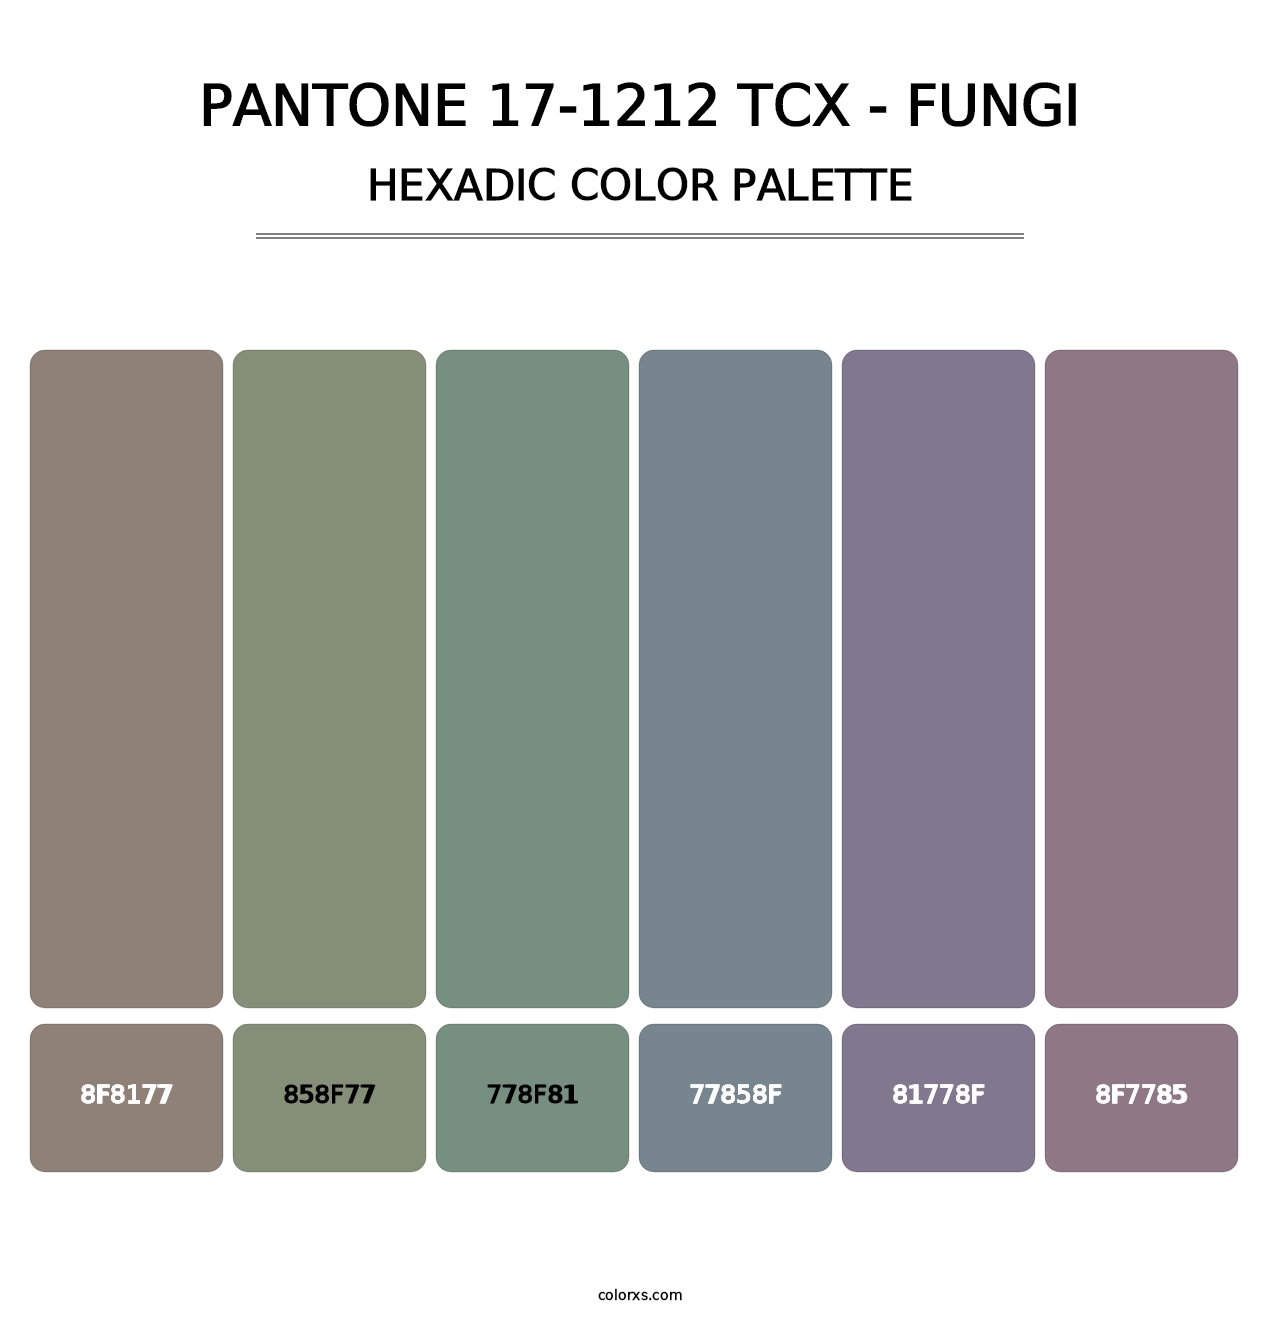 PANTONE 17-1212 TCX - Fungi - Hexadic Color Palette